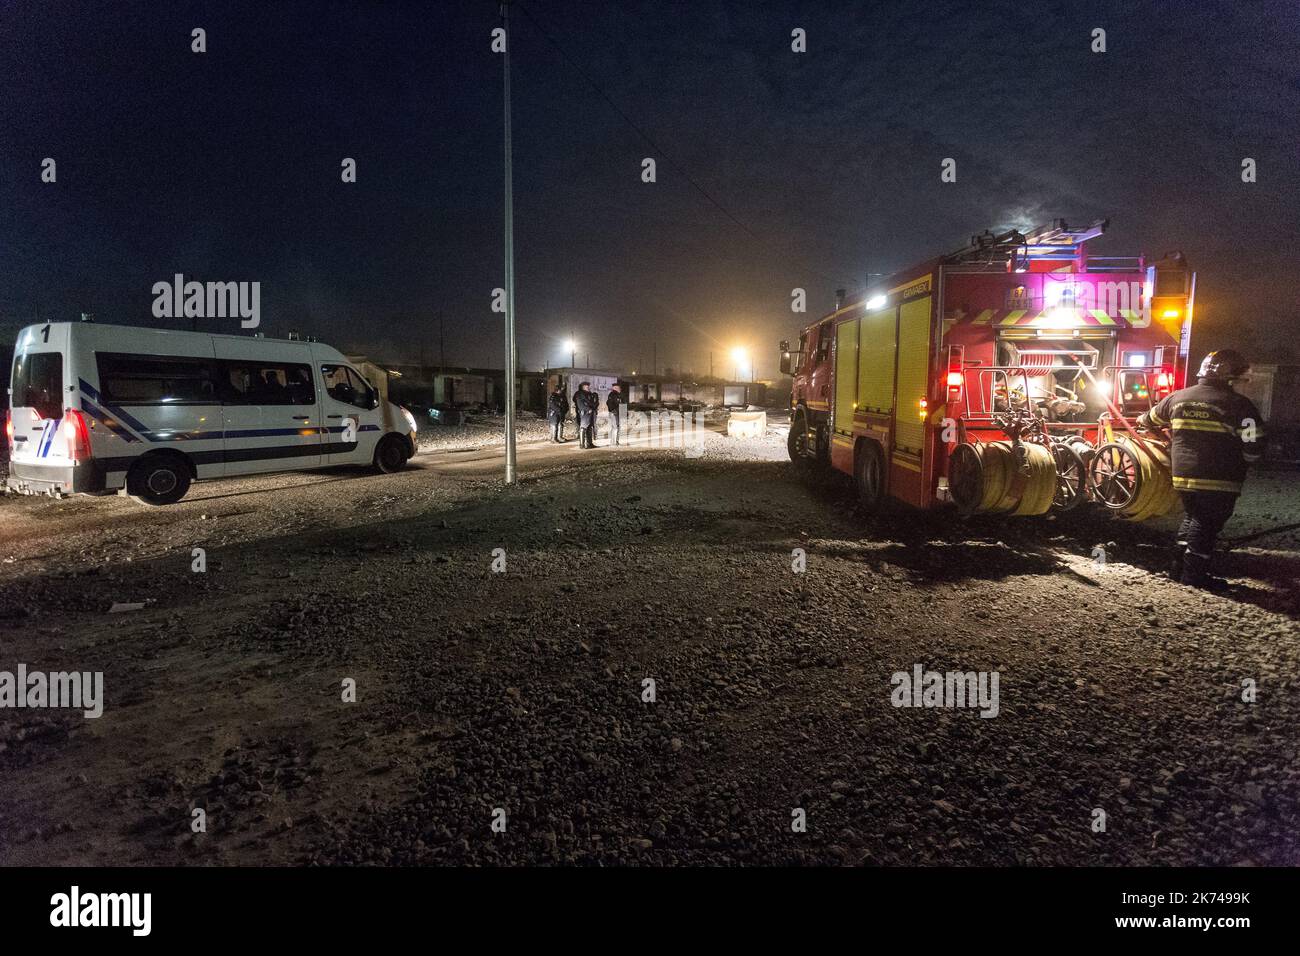 Un incendie a détruit presque la totalité du camp de migrants de Grande Synthe en France. Il semble que des incendies se produisent après des émeutes entre les afghans et les communautés kurdes irakiennes. - Sadak Souici / le Pictorium Banque D'Images